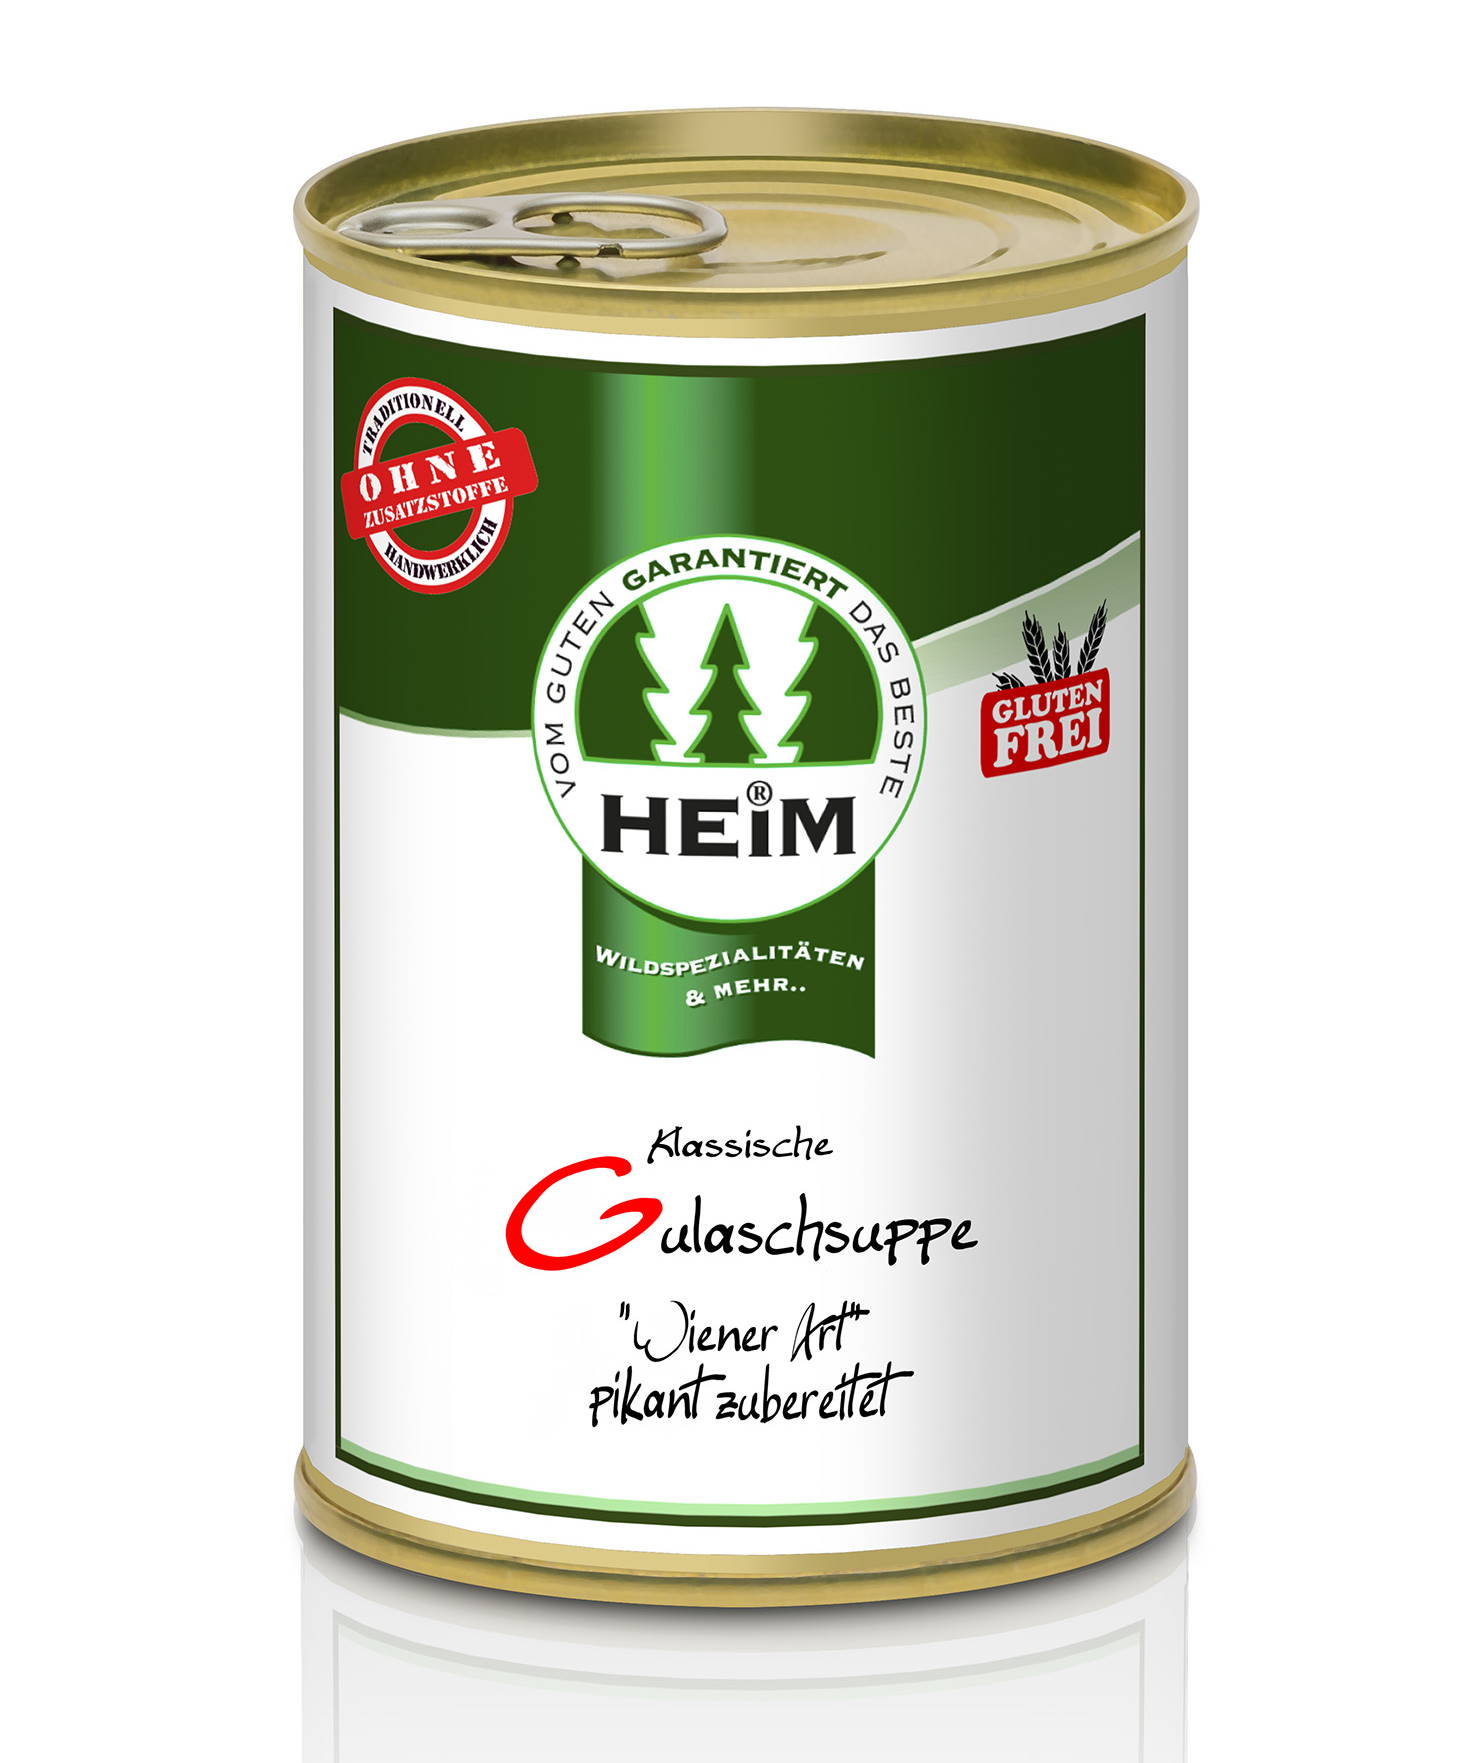 Klassische Gulaschsuppe "Wiener Art" (glutenfrei), HEIM 0,4 l